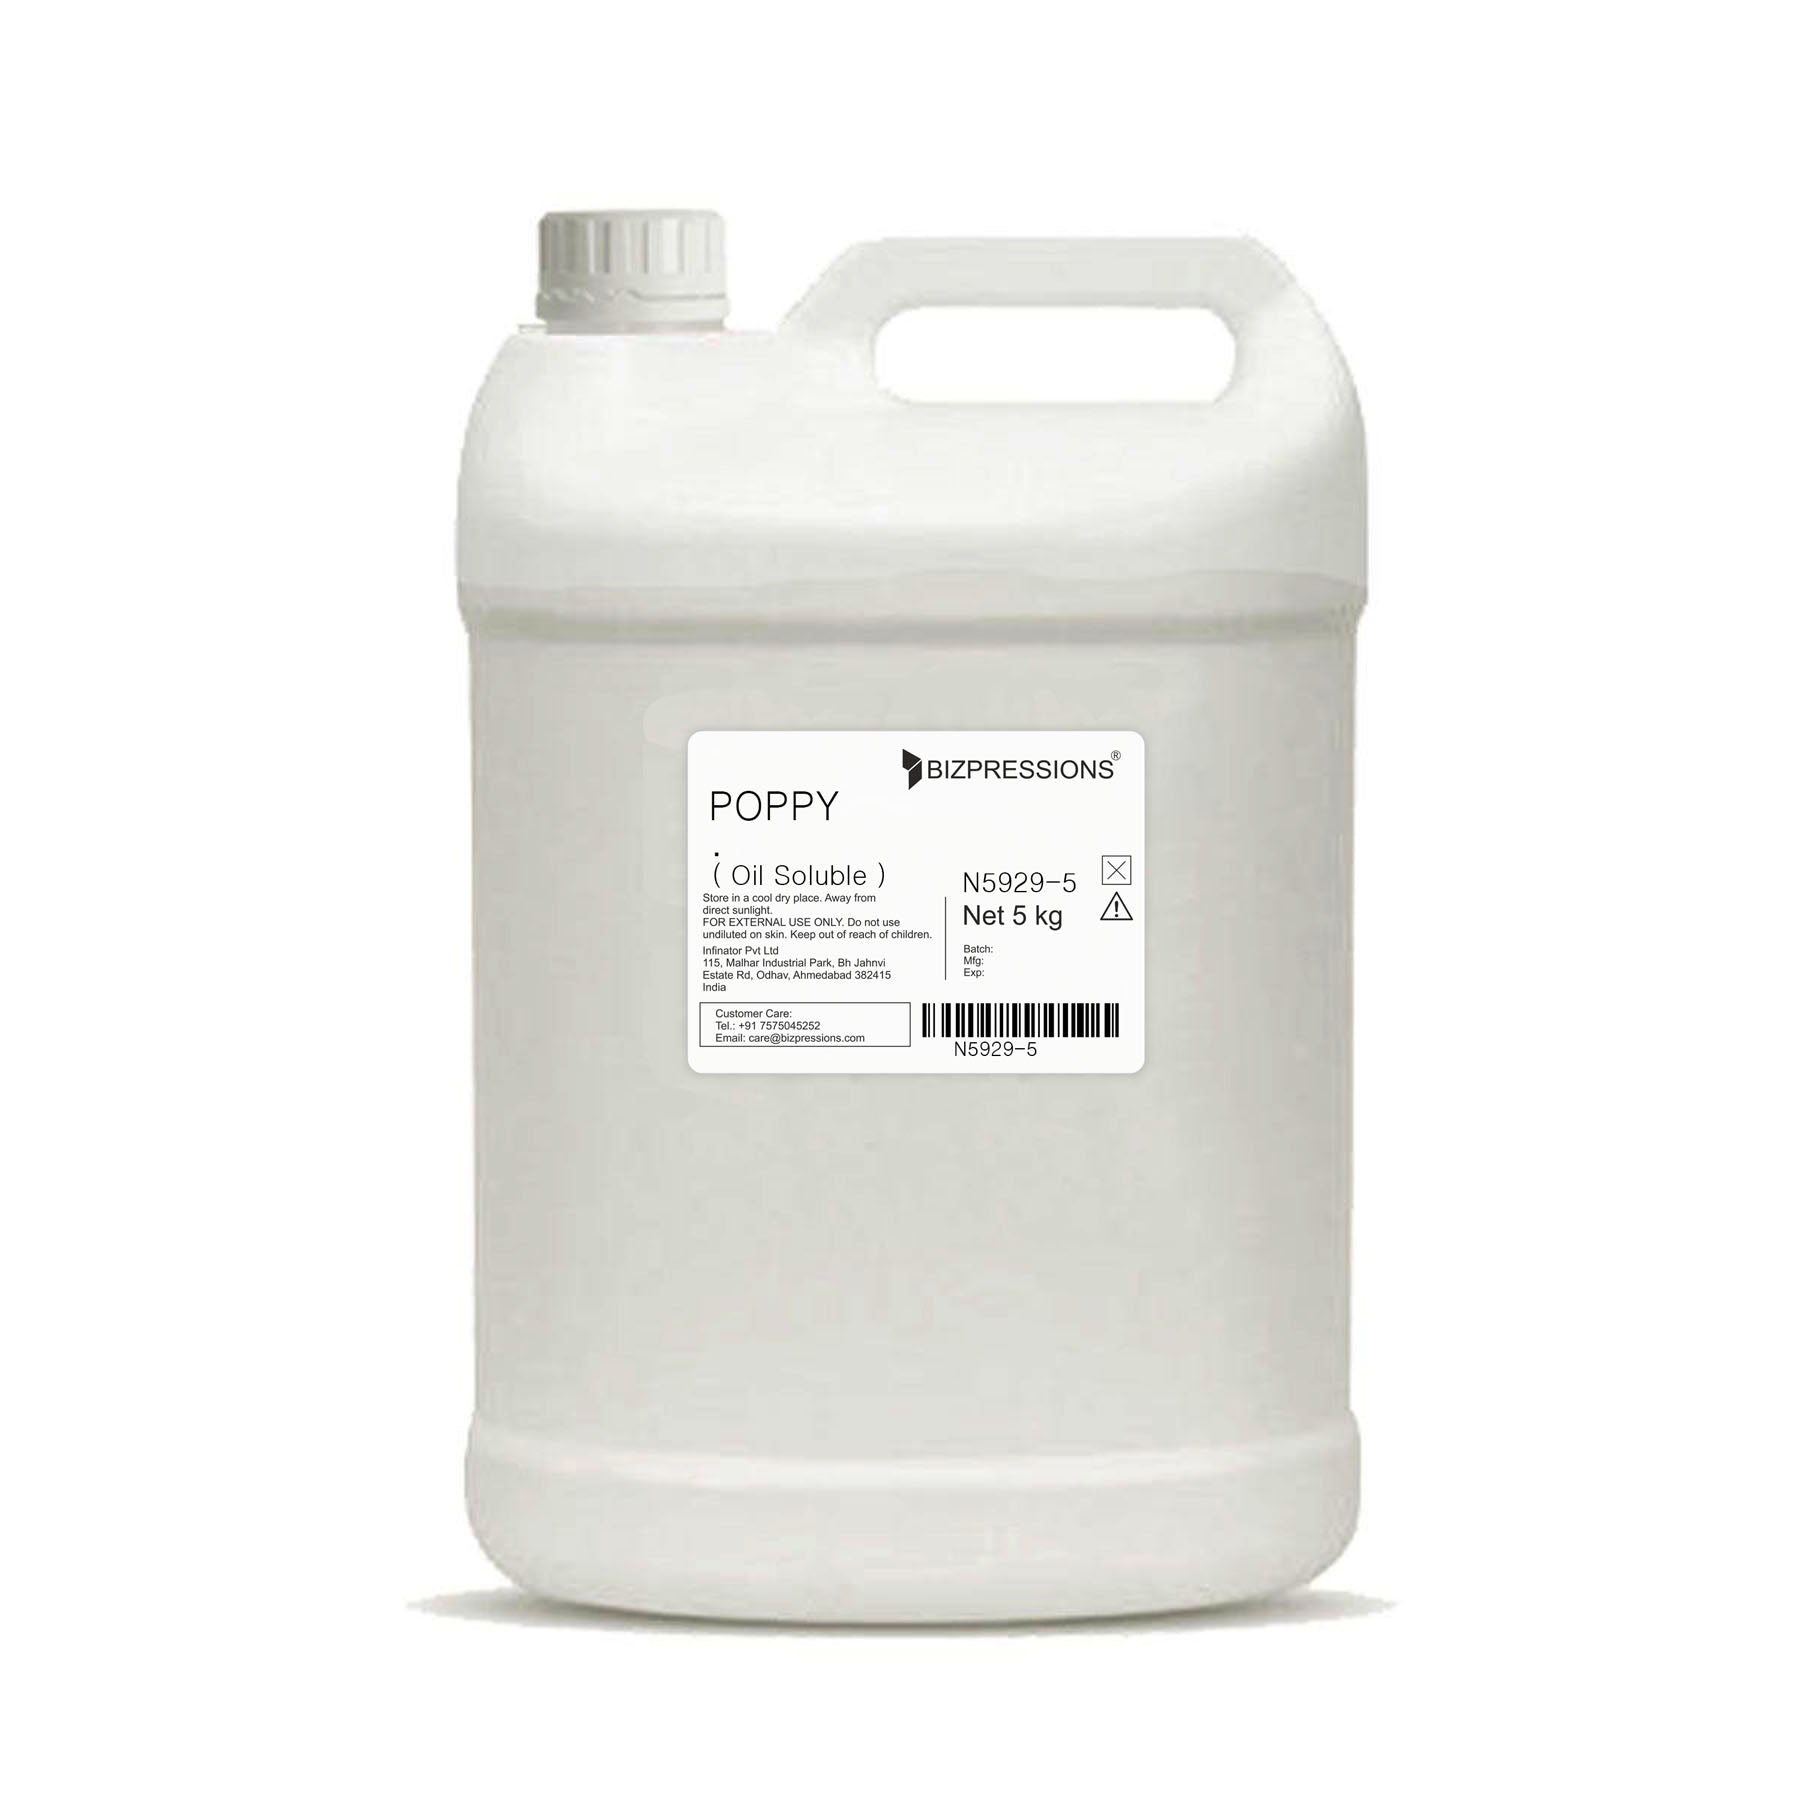 POPPY - Fragrance ( Oil Soluble ) - 5 kg